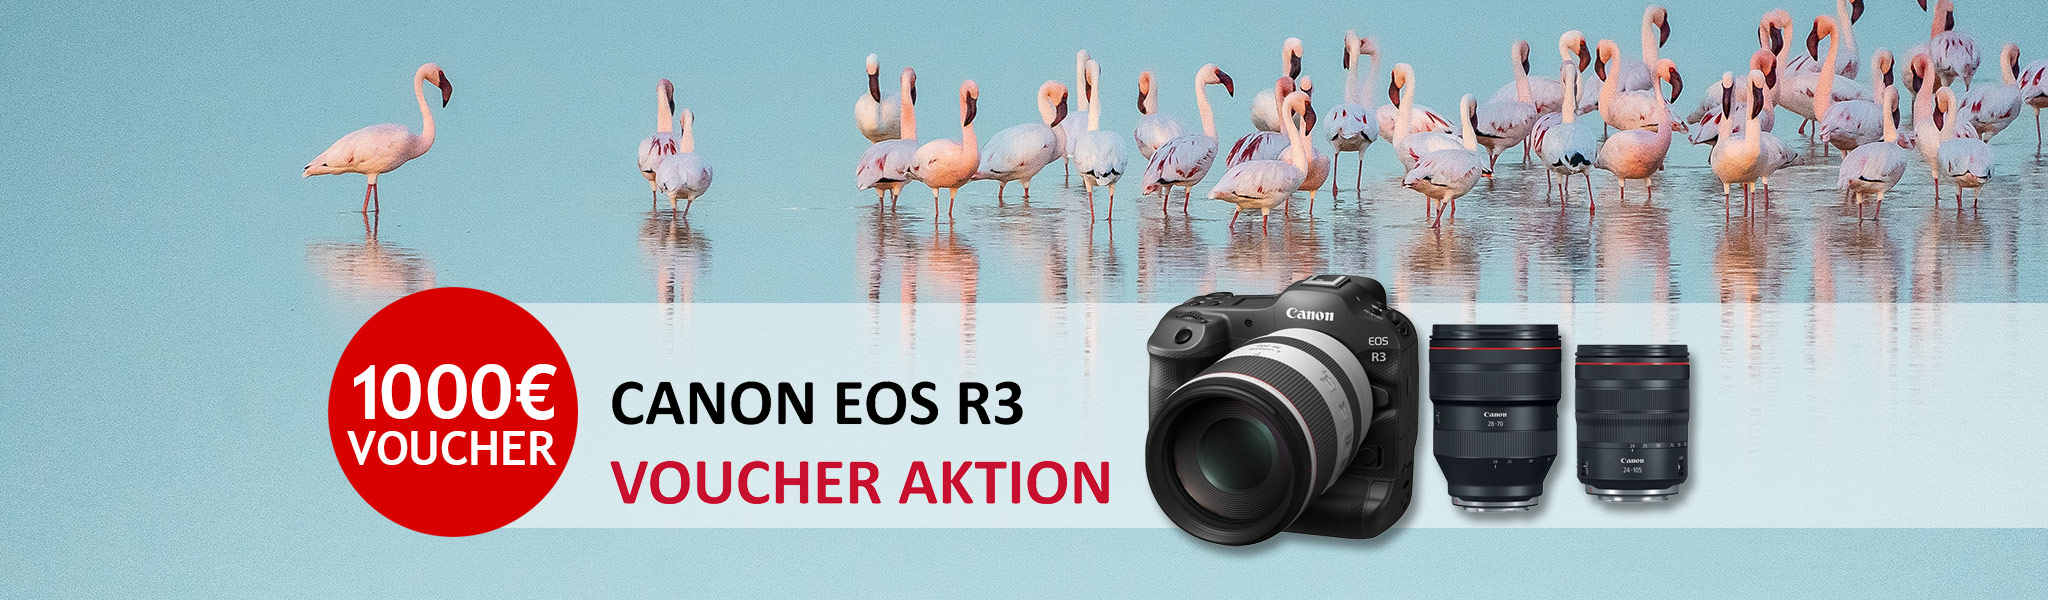 Canon EOS R3 Voucher-Aktion bei Fotomax in Nürnberg und Berlin